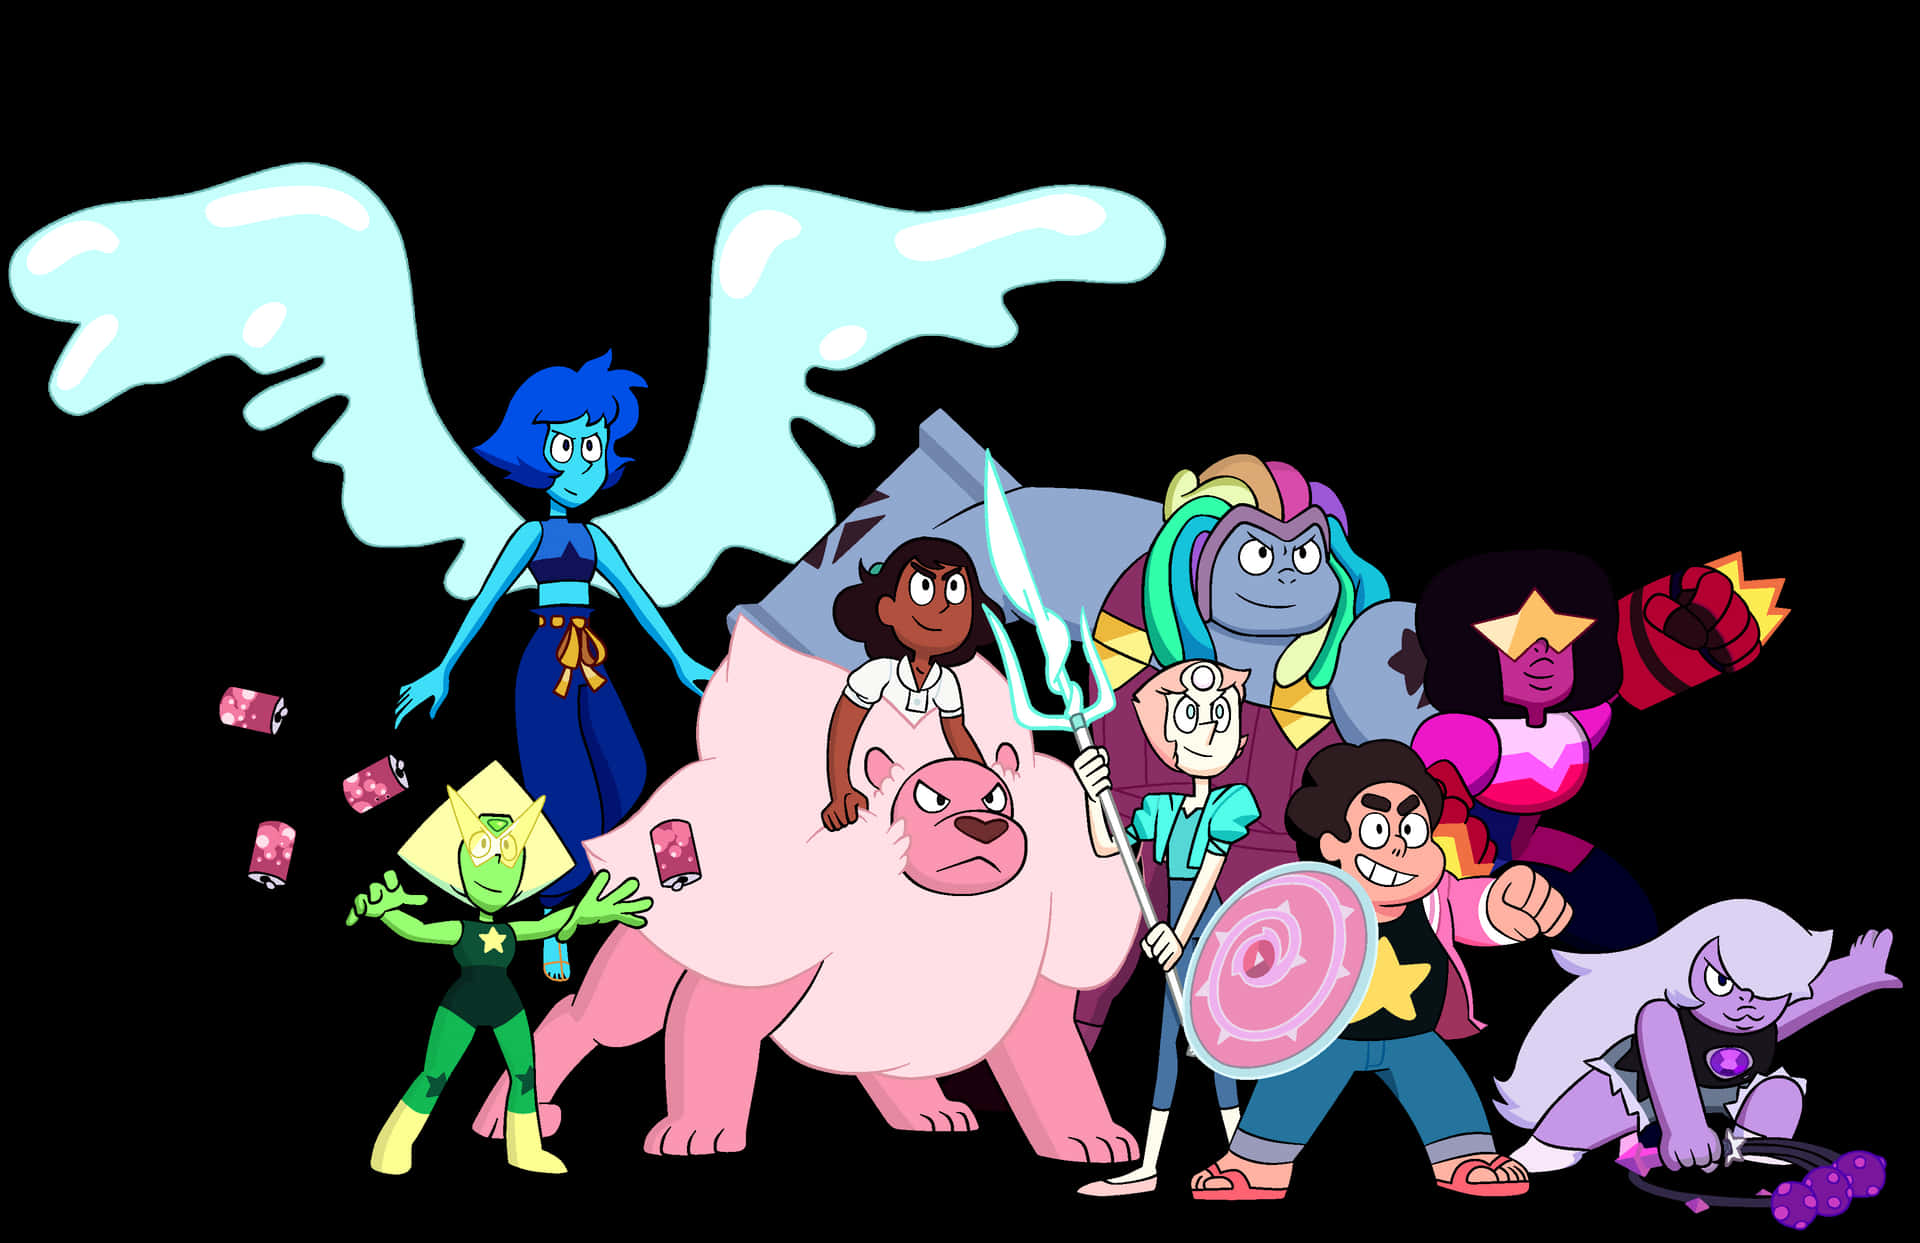 Steven Universe Karakterer - Steven, Garnet, Amethyst og Pearl Wallpaper